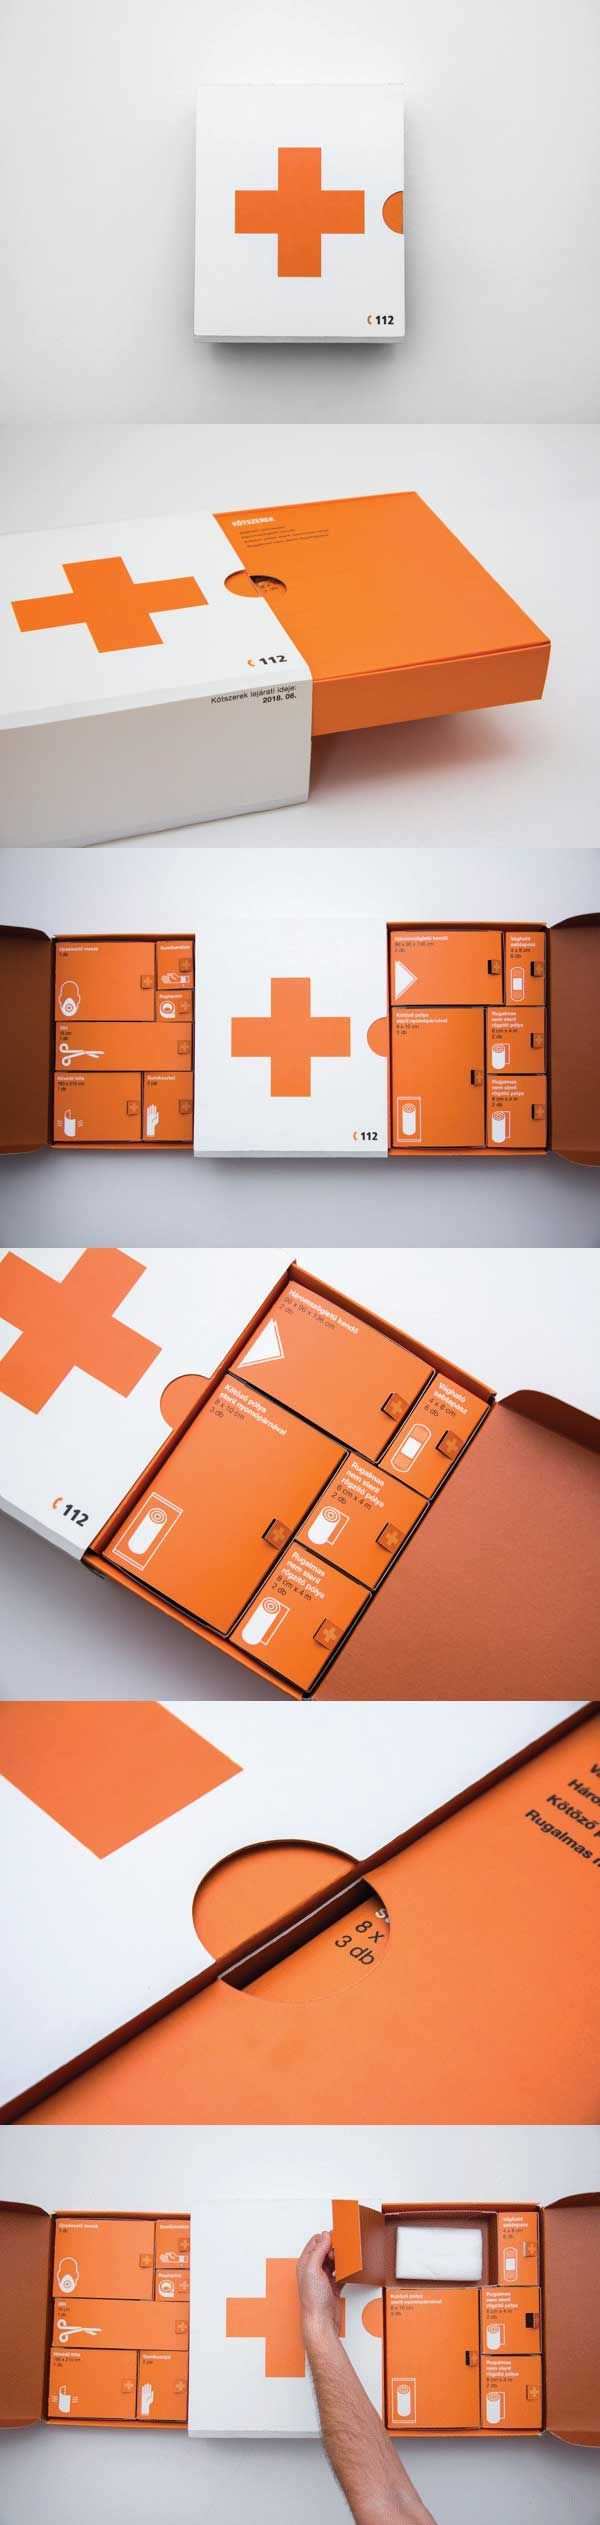 Perfektes Beispiel Wo Gutes Verpackungsdesign Mal Richtig Nutzlich Sein Kann Denkt Mal Im Ver Packaging Design Inspiration Unique Packaging Box Packing Design